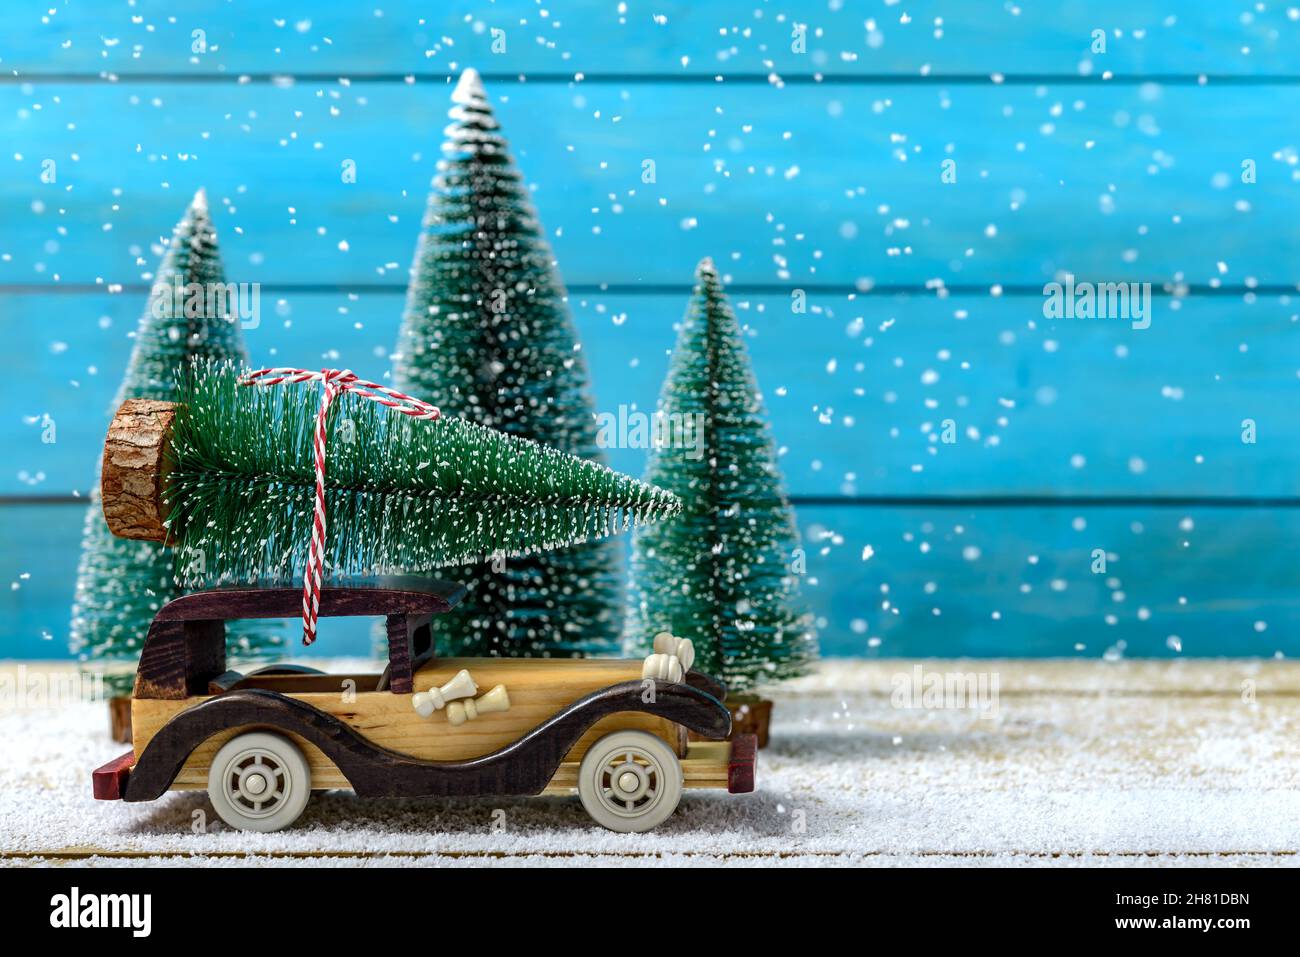 Voiture jouet avec arbre de Noël sur le toit à côté des sapins pendant qu'il neige sur une table en bois.Concept de célébration de Noël et du nouvel an. Banque D'Images